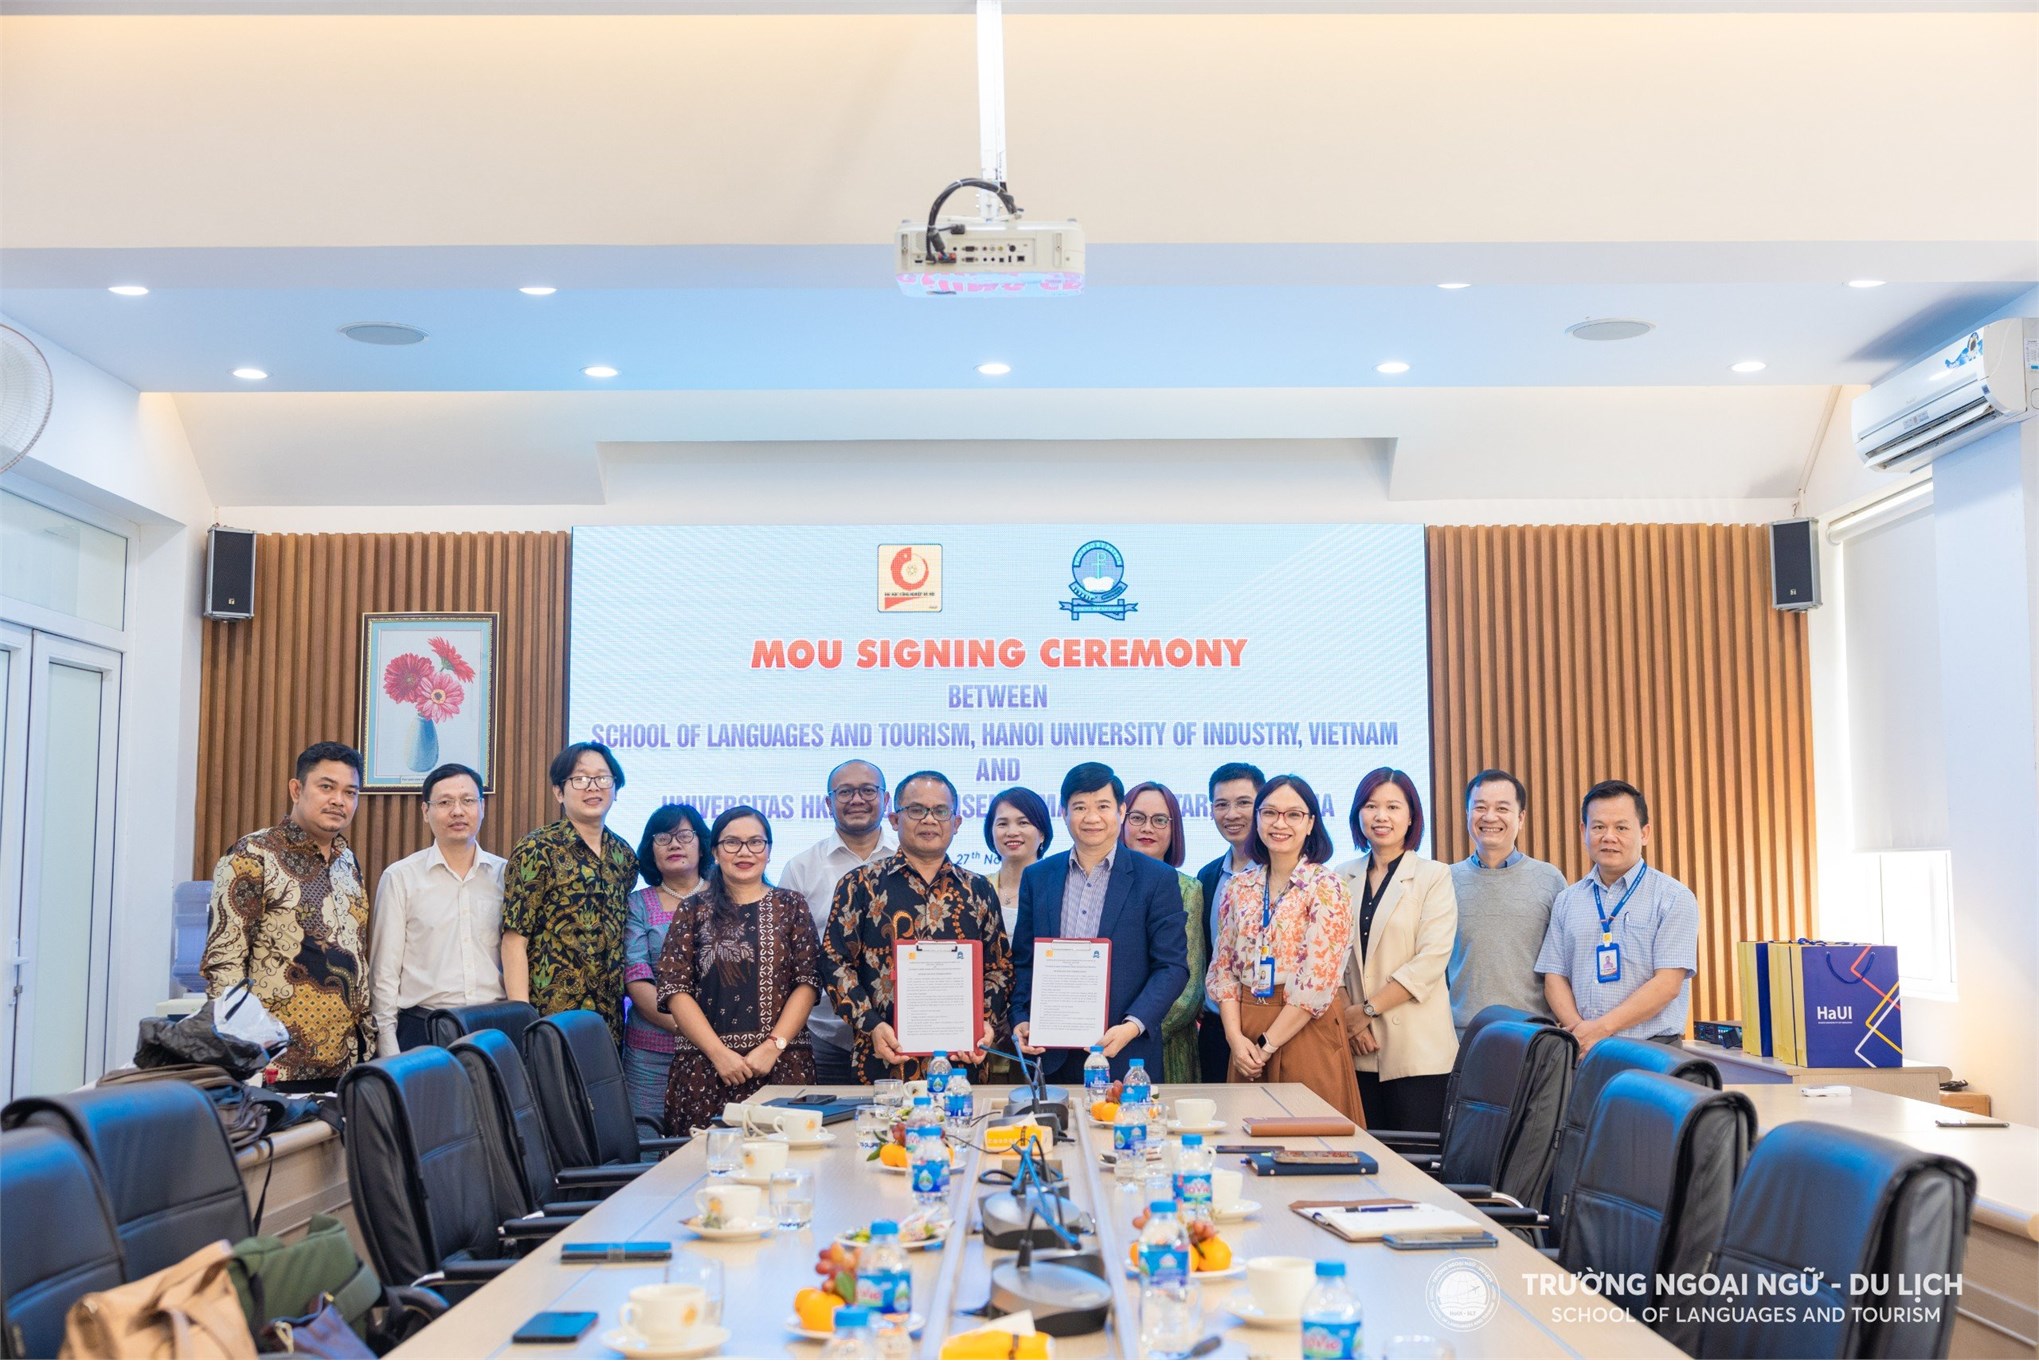 Dấu mốc mới cho mối quan hệ hợp tác phát triển giữa Trường Ngoại ngữ - Du lịch, Trường Đại học Công nghiệp Hà Nội và Trường Đại học Universitas HKBP Nommensen